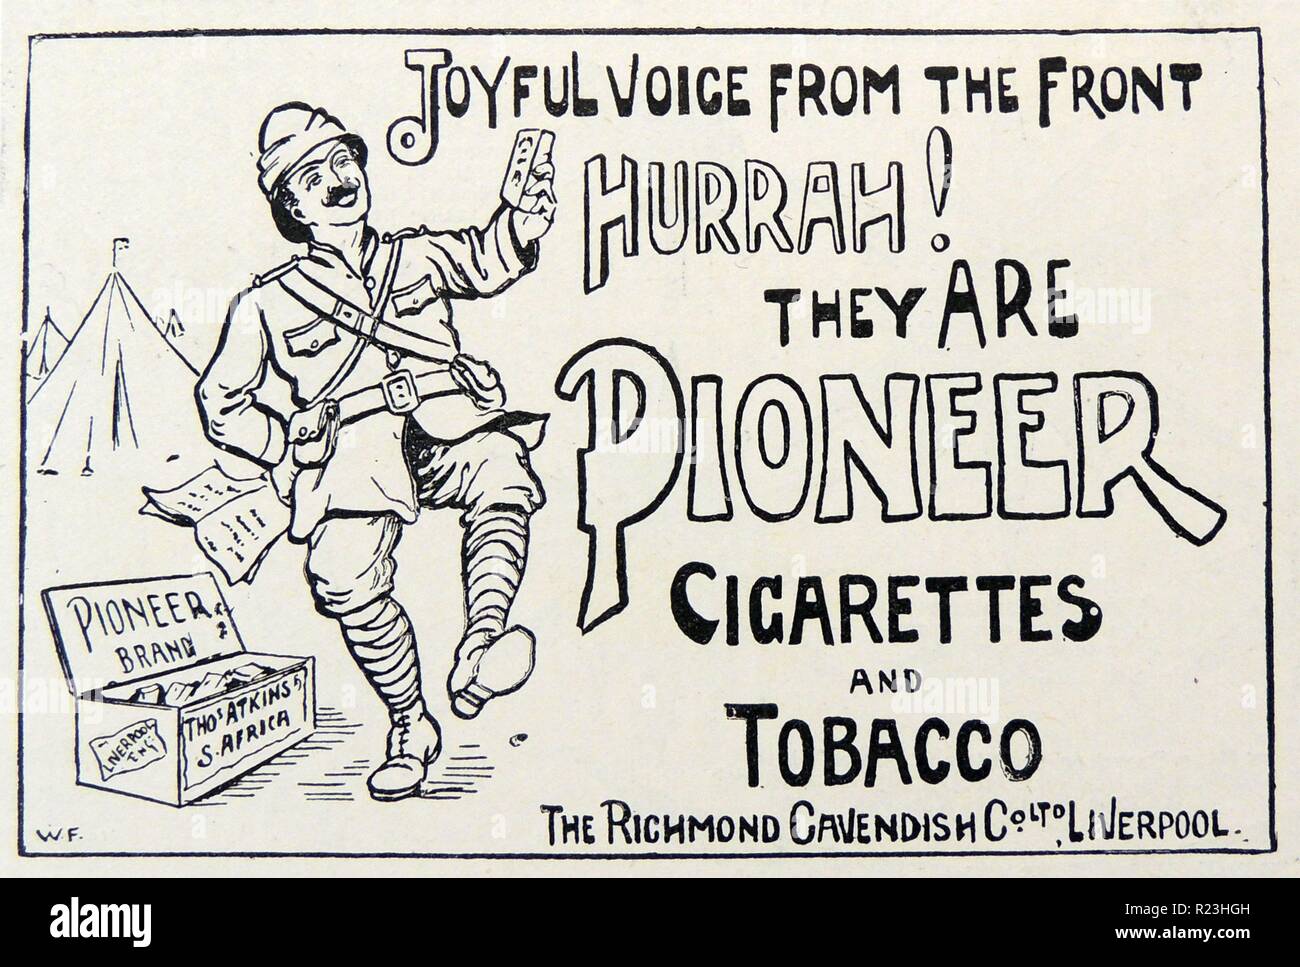 Werbung, die ein britischer Soldat in Südafrika im Burenkrieg erfreut, eine Packung Zigaretten 'Pionier' zu erhalten. Kupferstich, London, 1900. Stockfoto